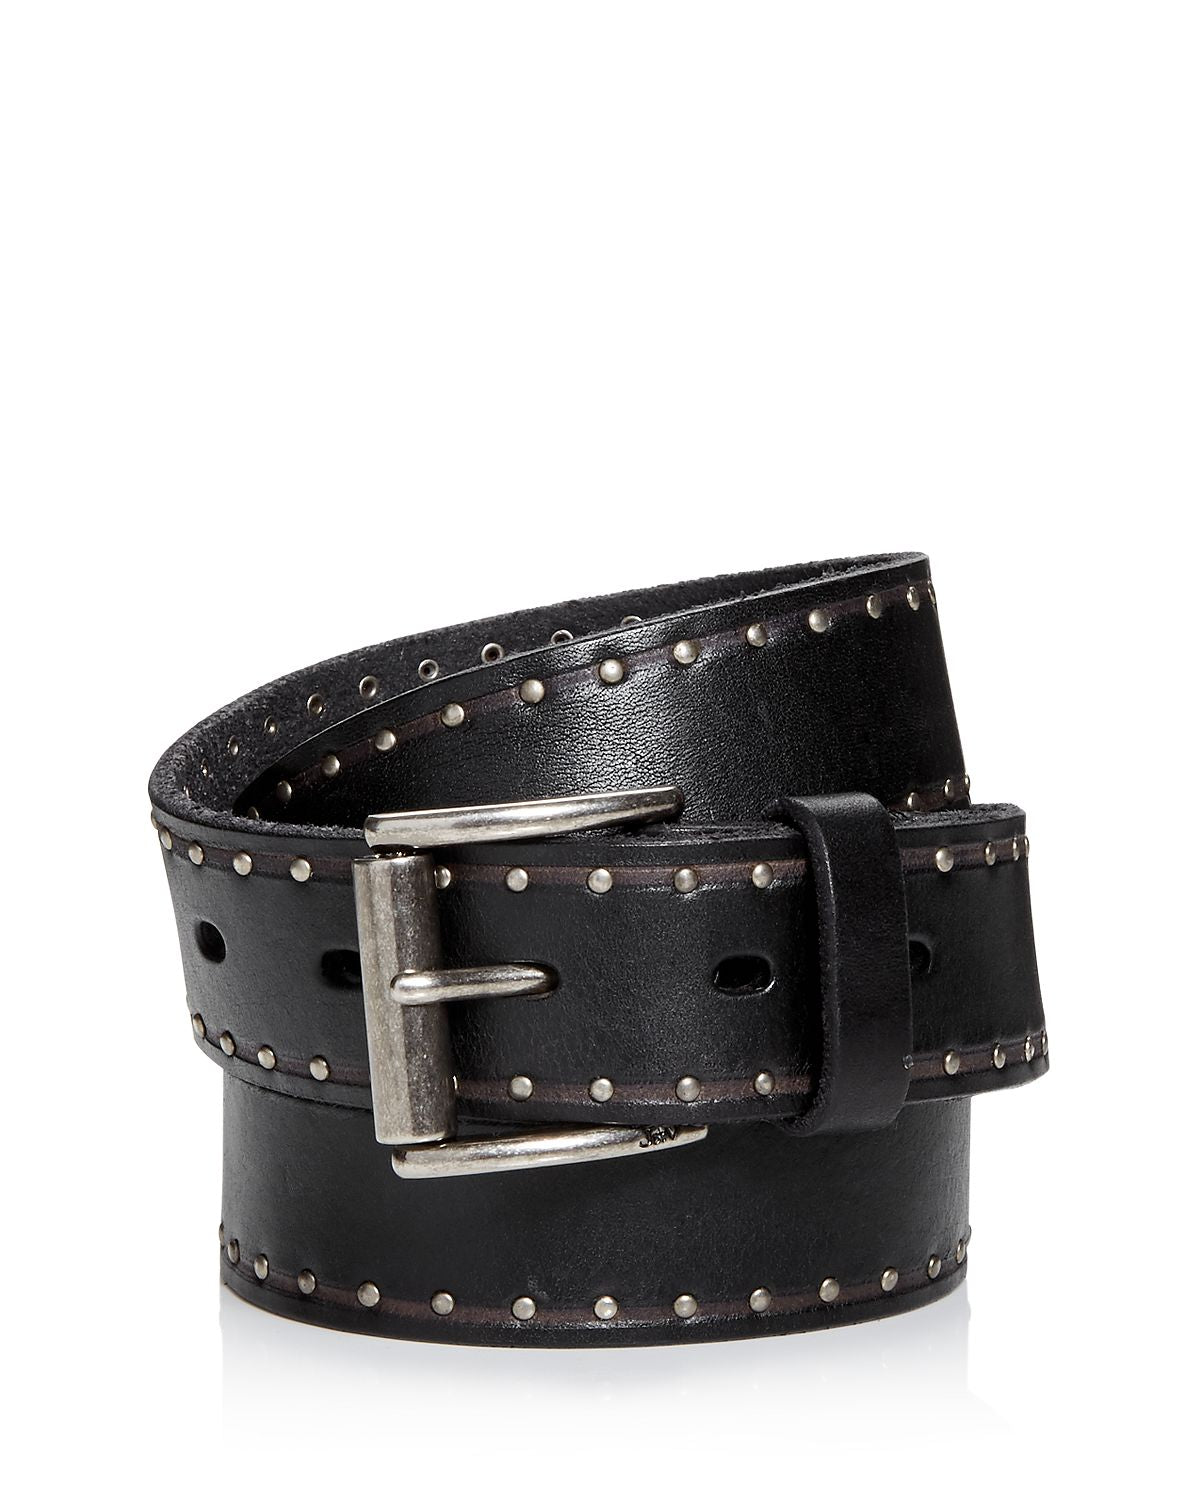 John Varvatos Star Usa Studded Leather Belt Black